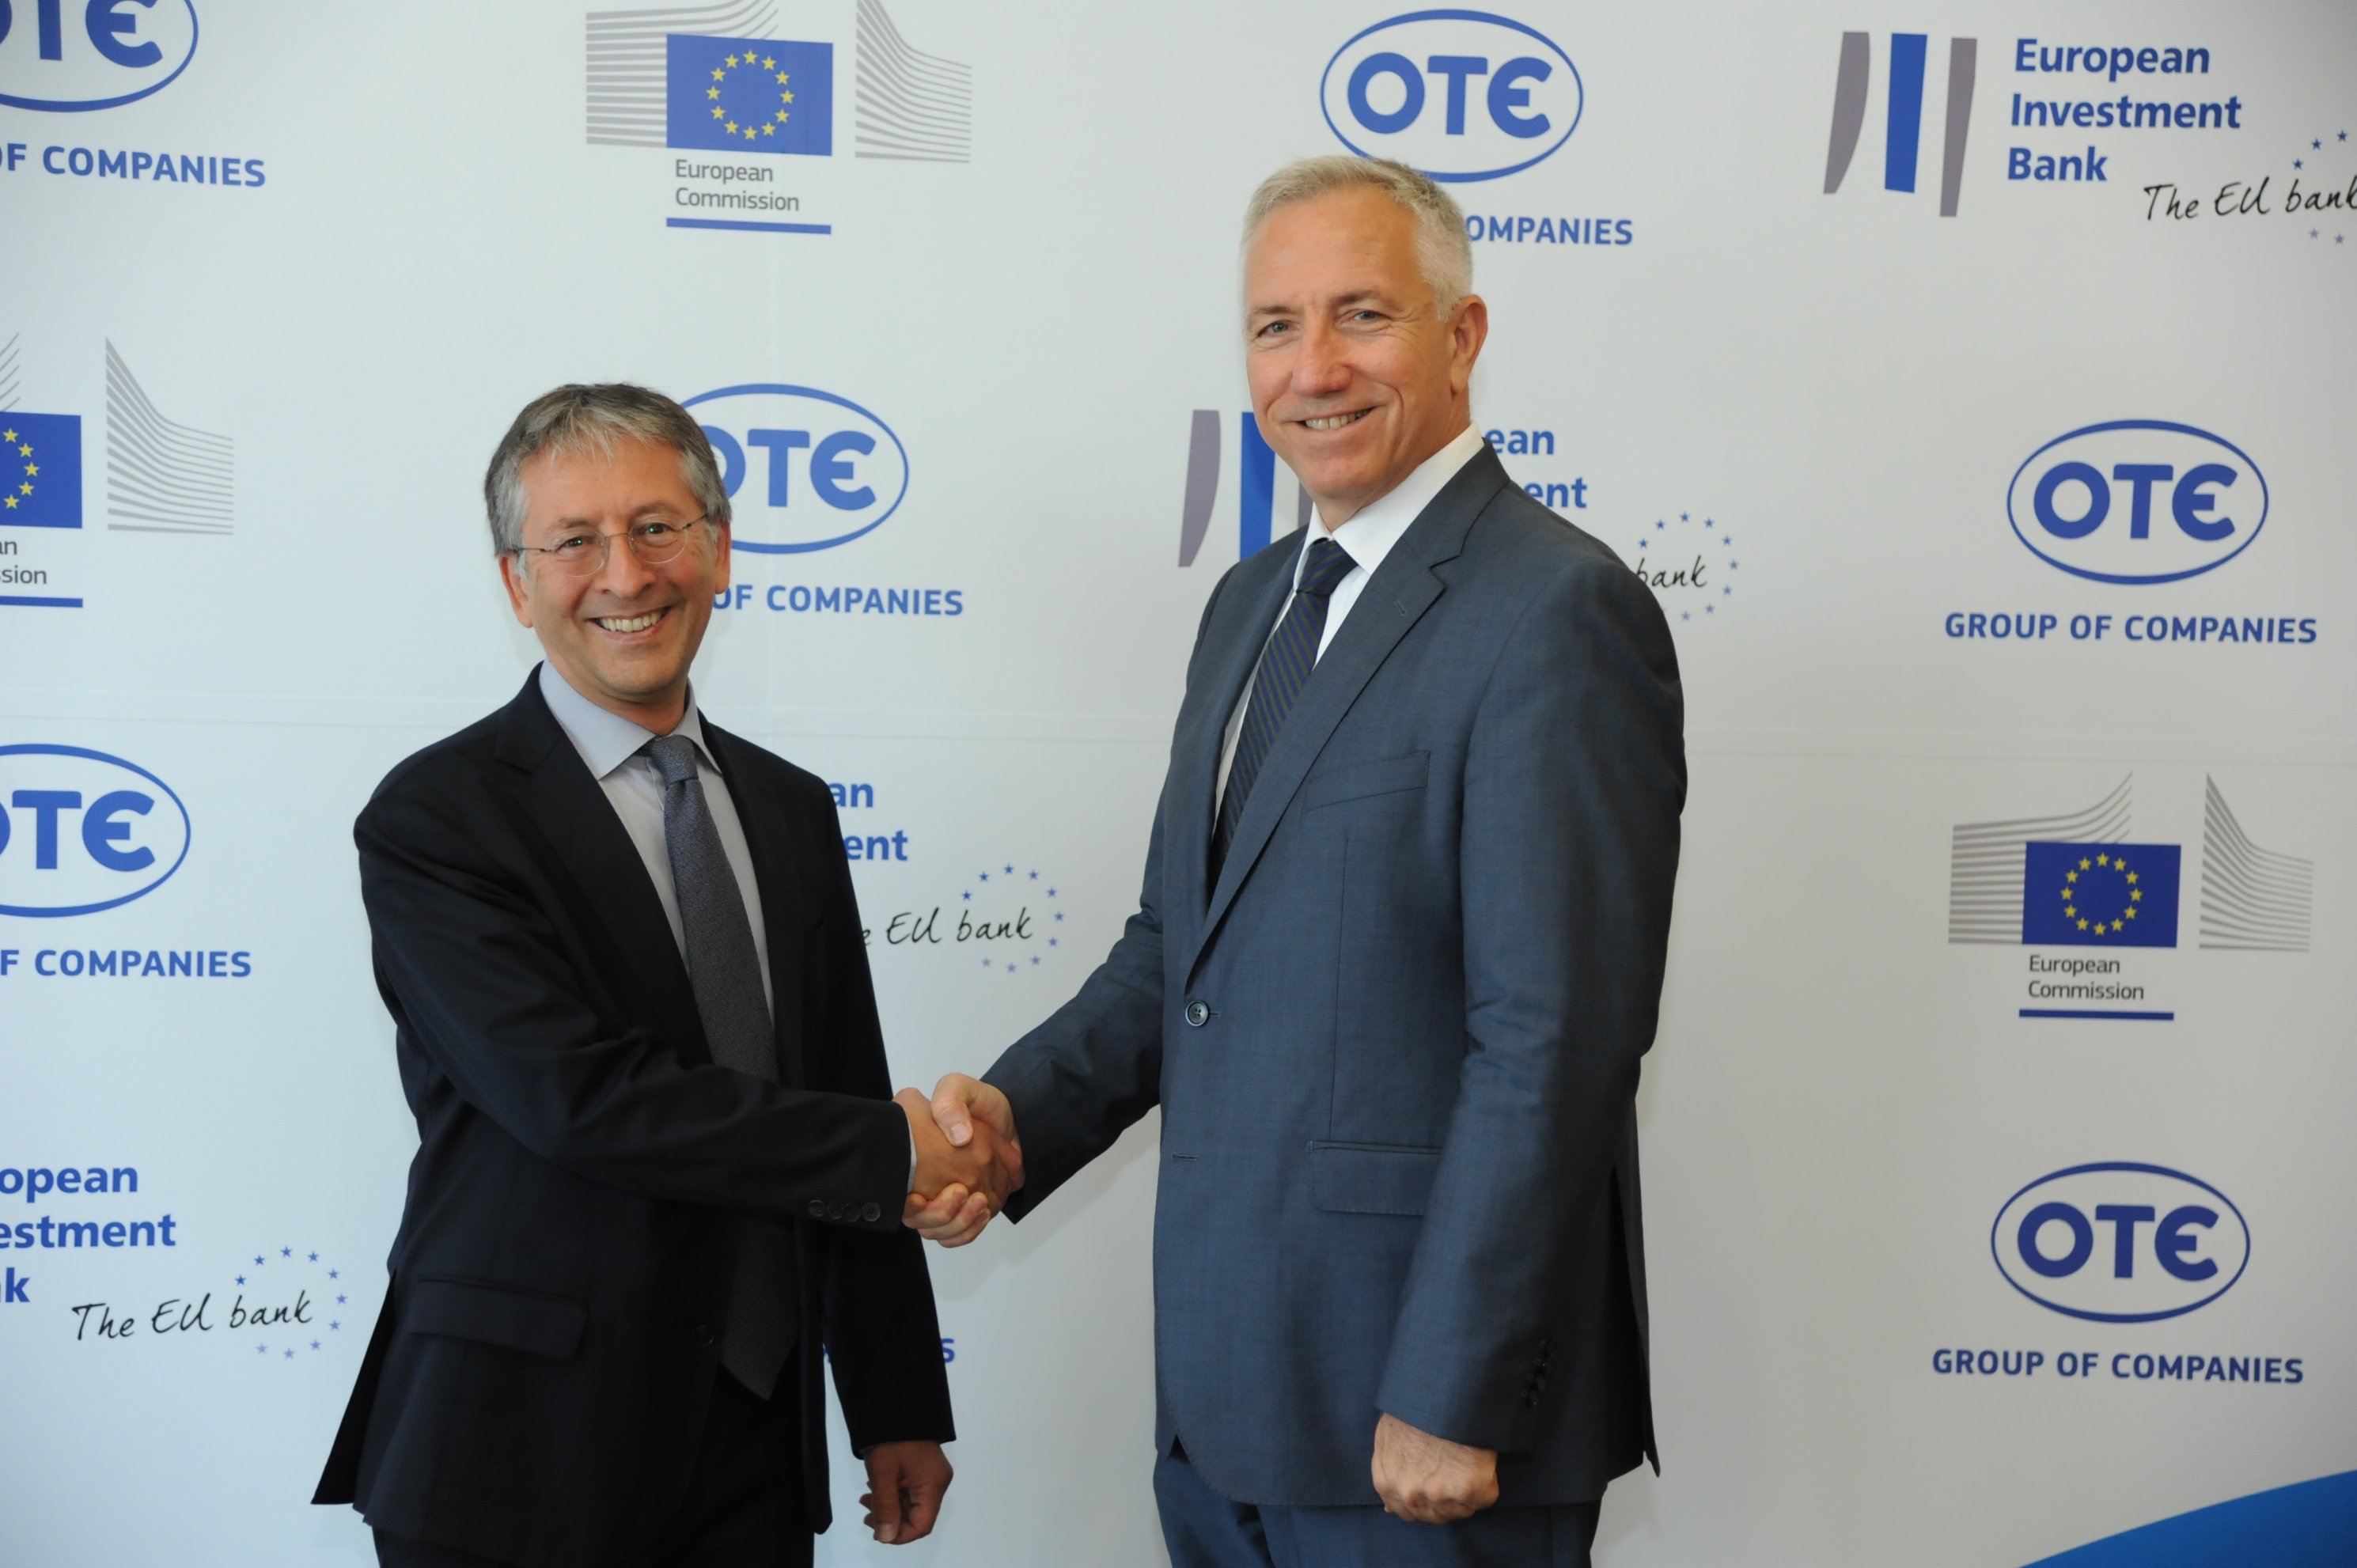 ΟΤΕ: Συμφωνία 300 εκατ. για τη χρηματοδότηση δικτυακών υποδομών στην Ελλάδα